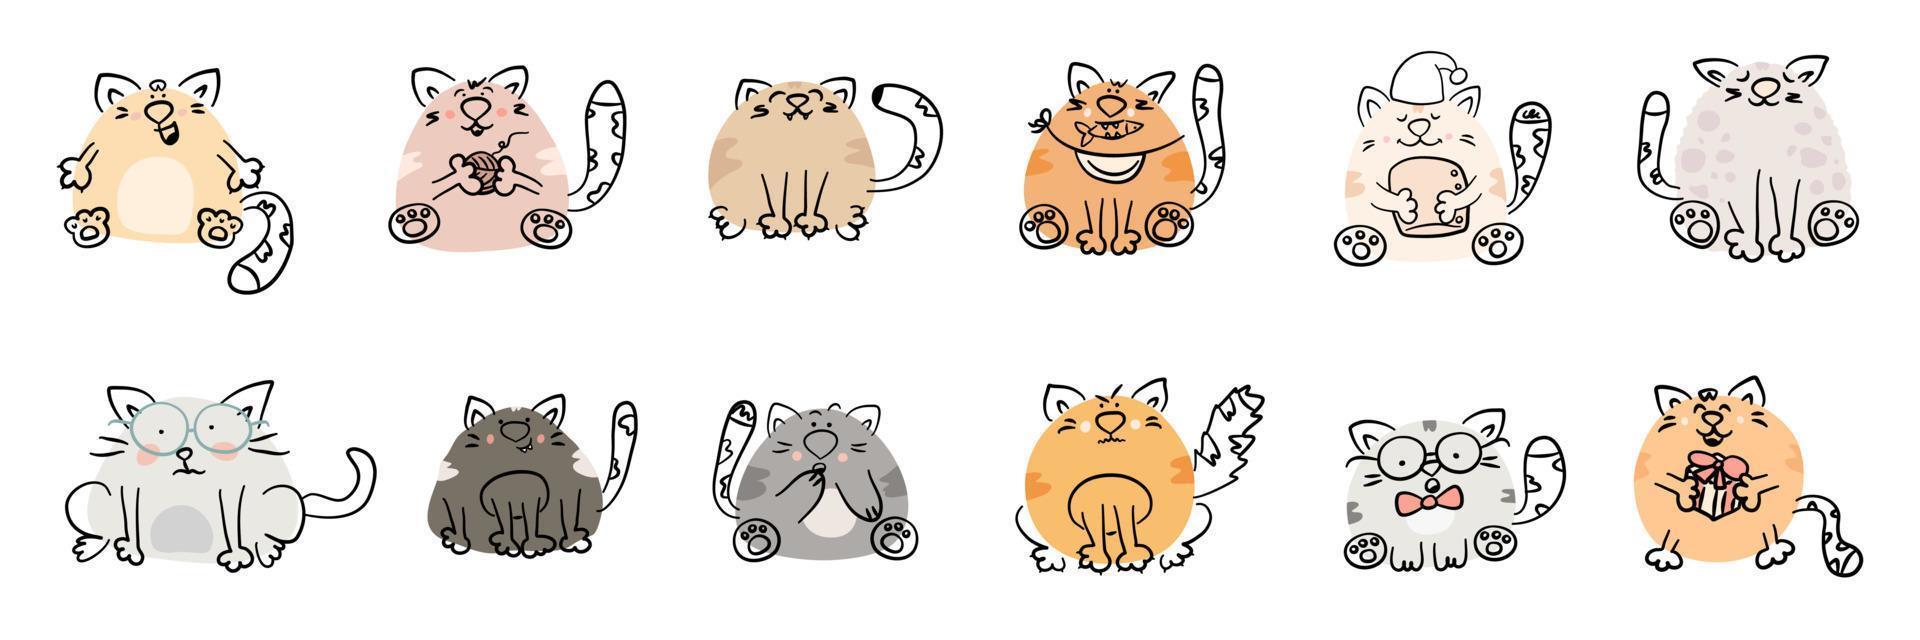 conjunto de gatos dos desenhos animados. personagens animais engraçados desenhados à mão isolados no fundo branco. bichinhos fofos com emoções diferentes. ilustração vetorial plana. vetor